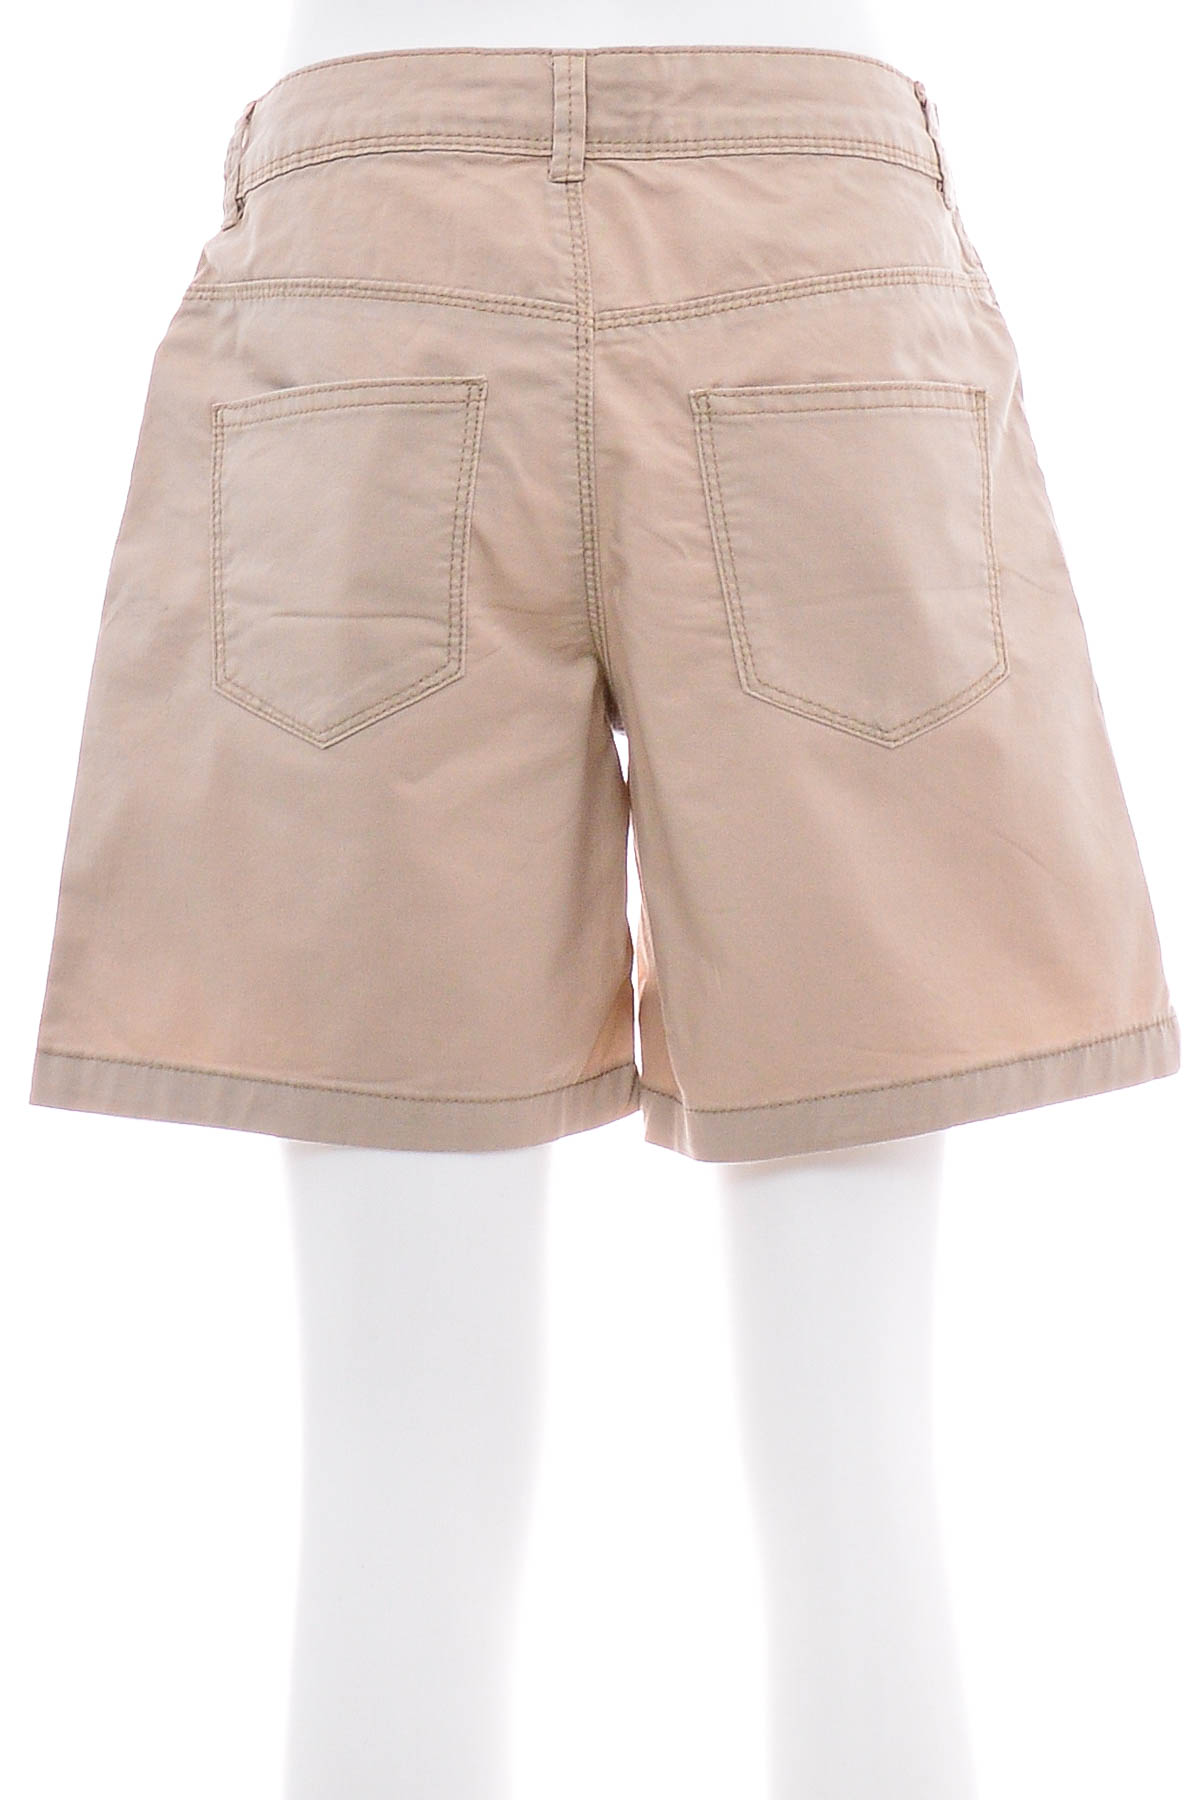 Female shorts - Terranova - 1